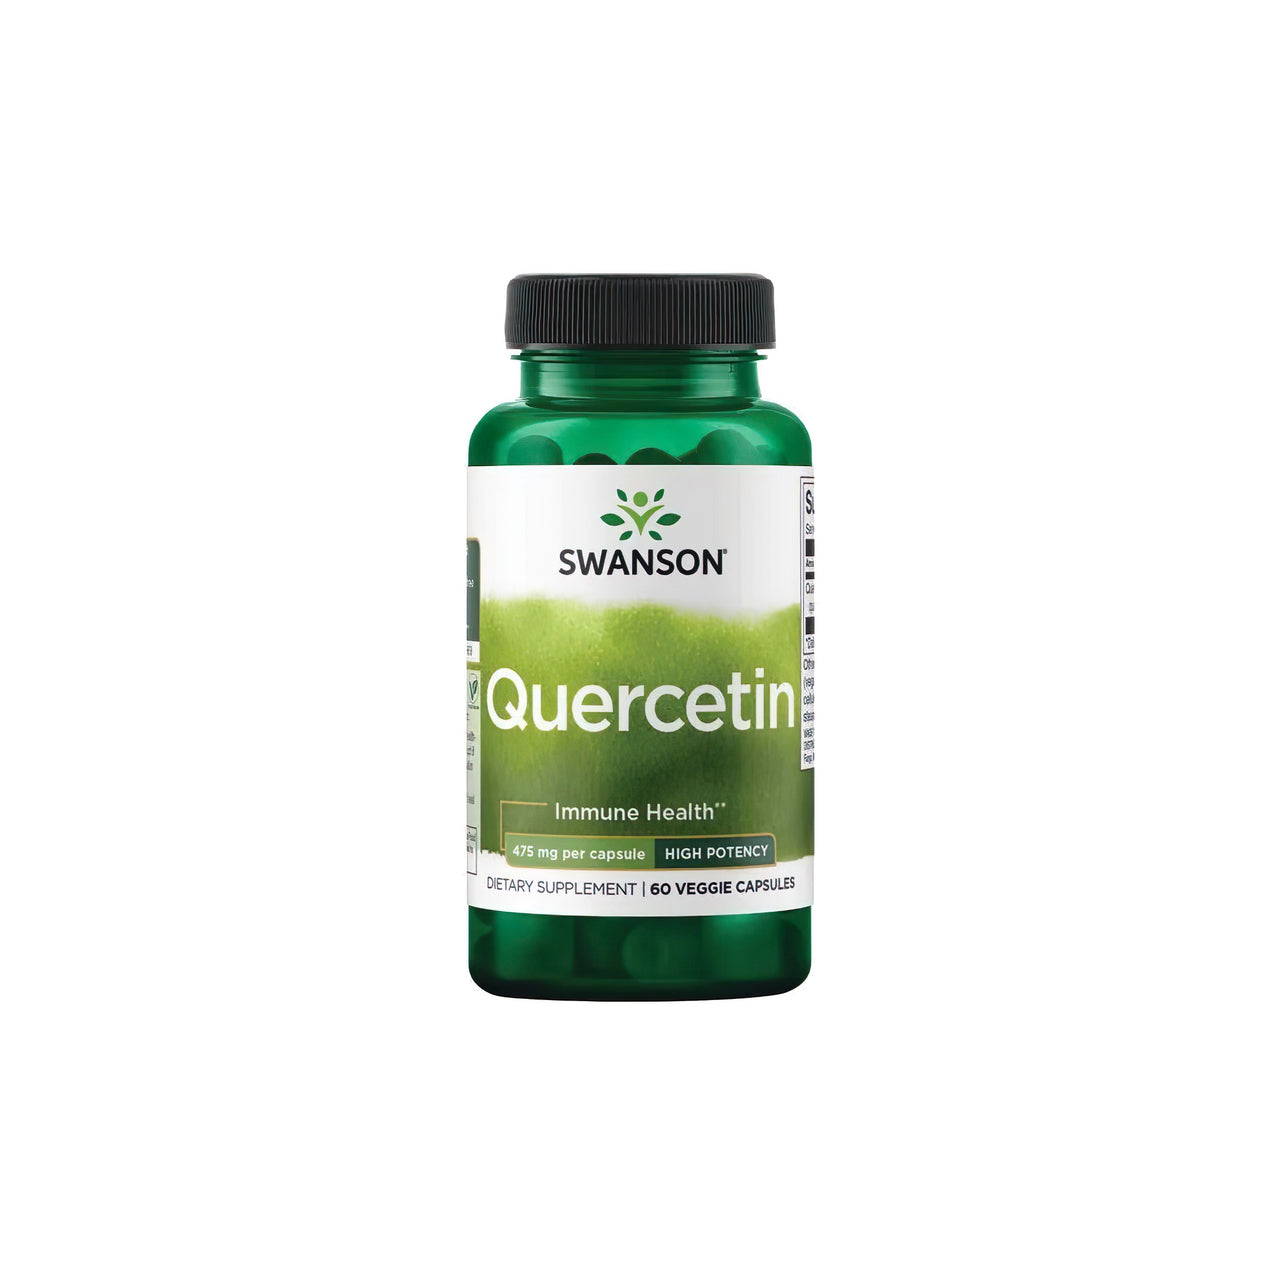 Eine Flasche Swanson Quercetin 475 mg 60 vcaps, ein starkes Antioxidans für das Immunsystem, auf einem weißen Hintergrund.